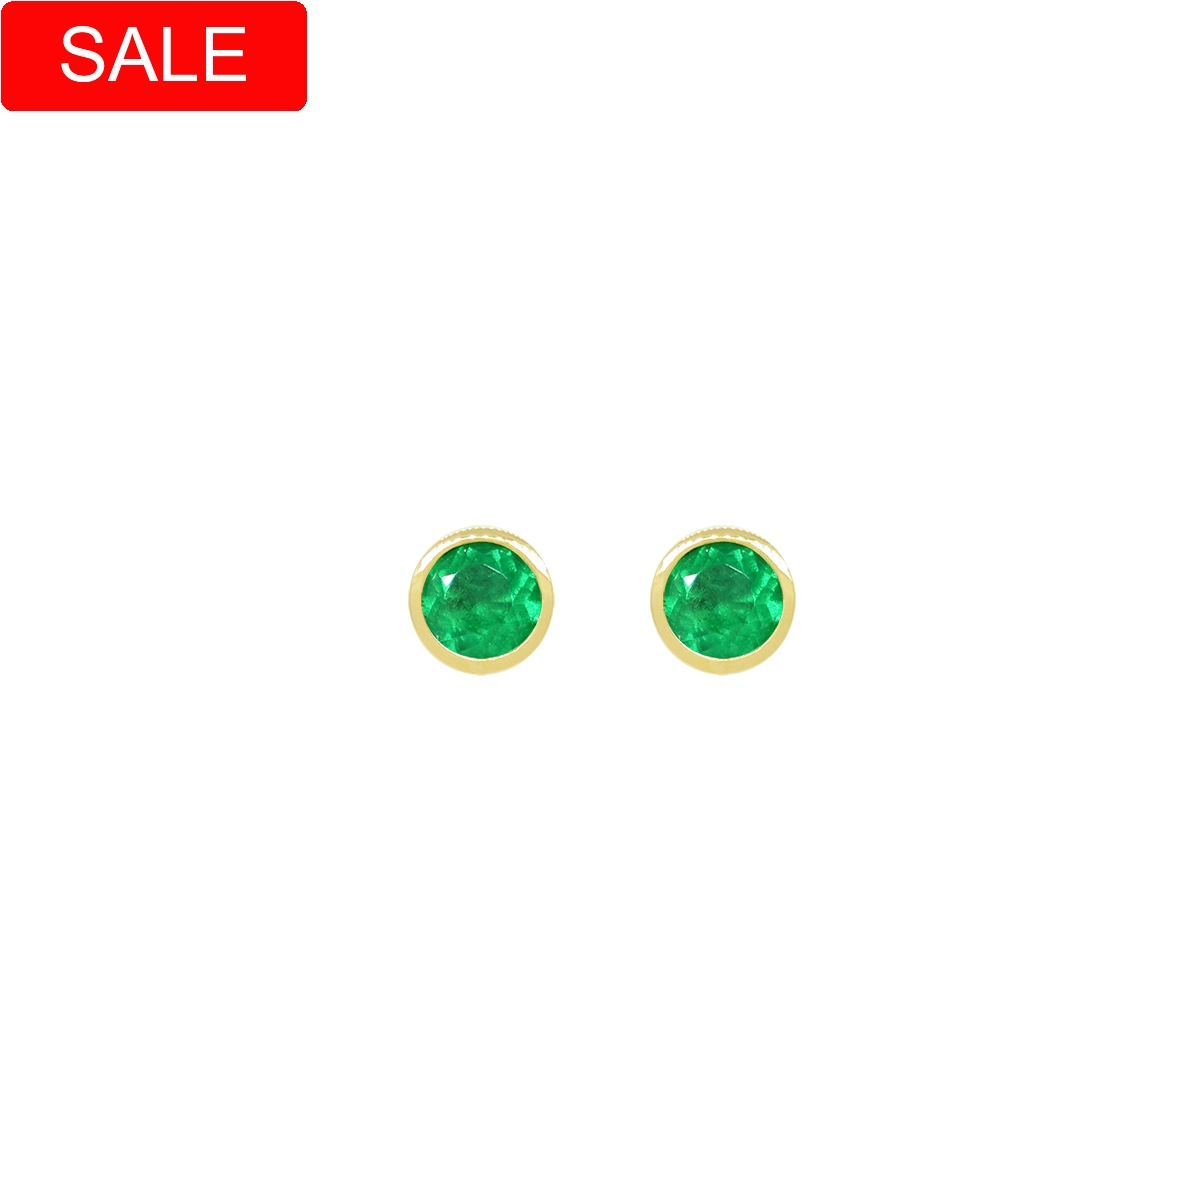 Small Emerald Stud Earrings in Bezel Setting